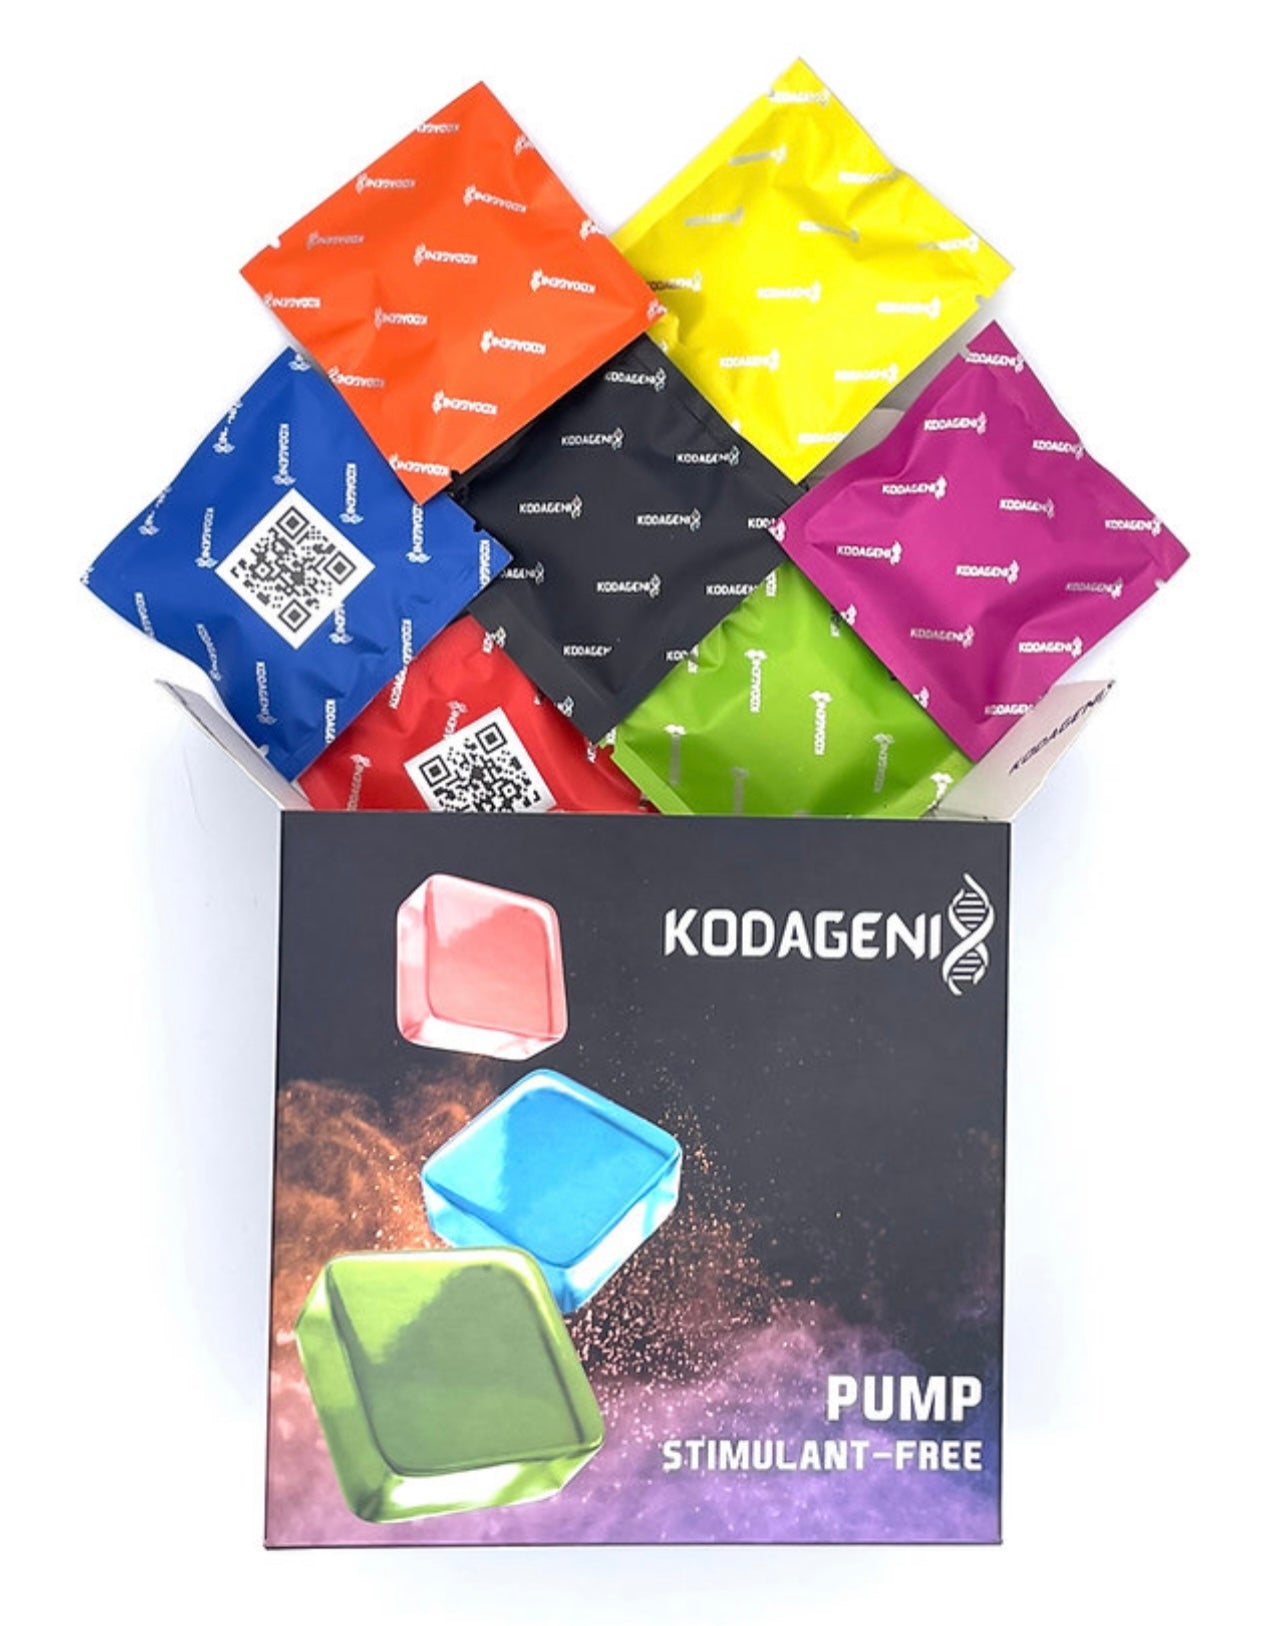 Pump Gummies by Kodagenix